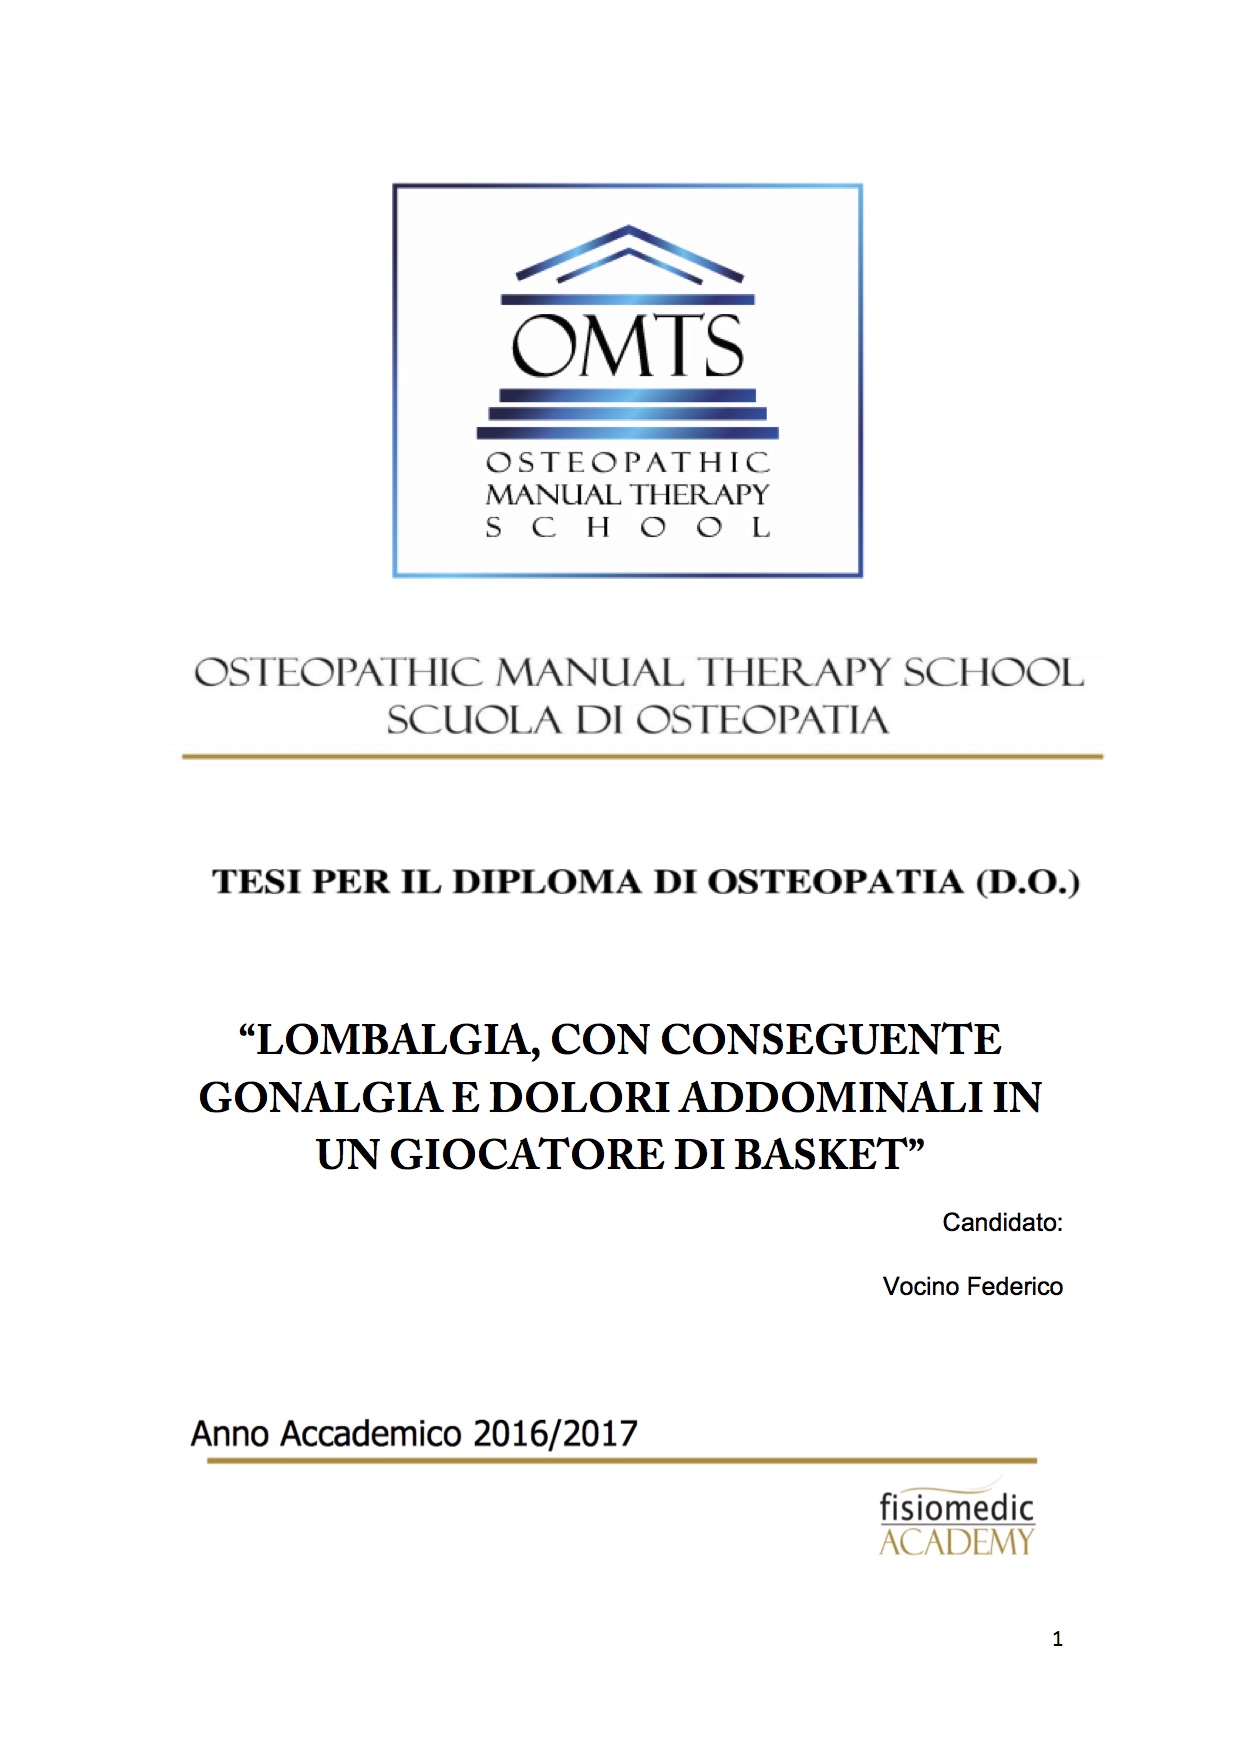 Federico Vocino Tesi Diploma Osteopatia 2017